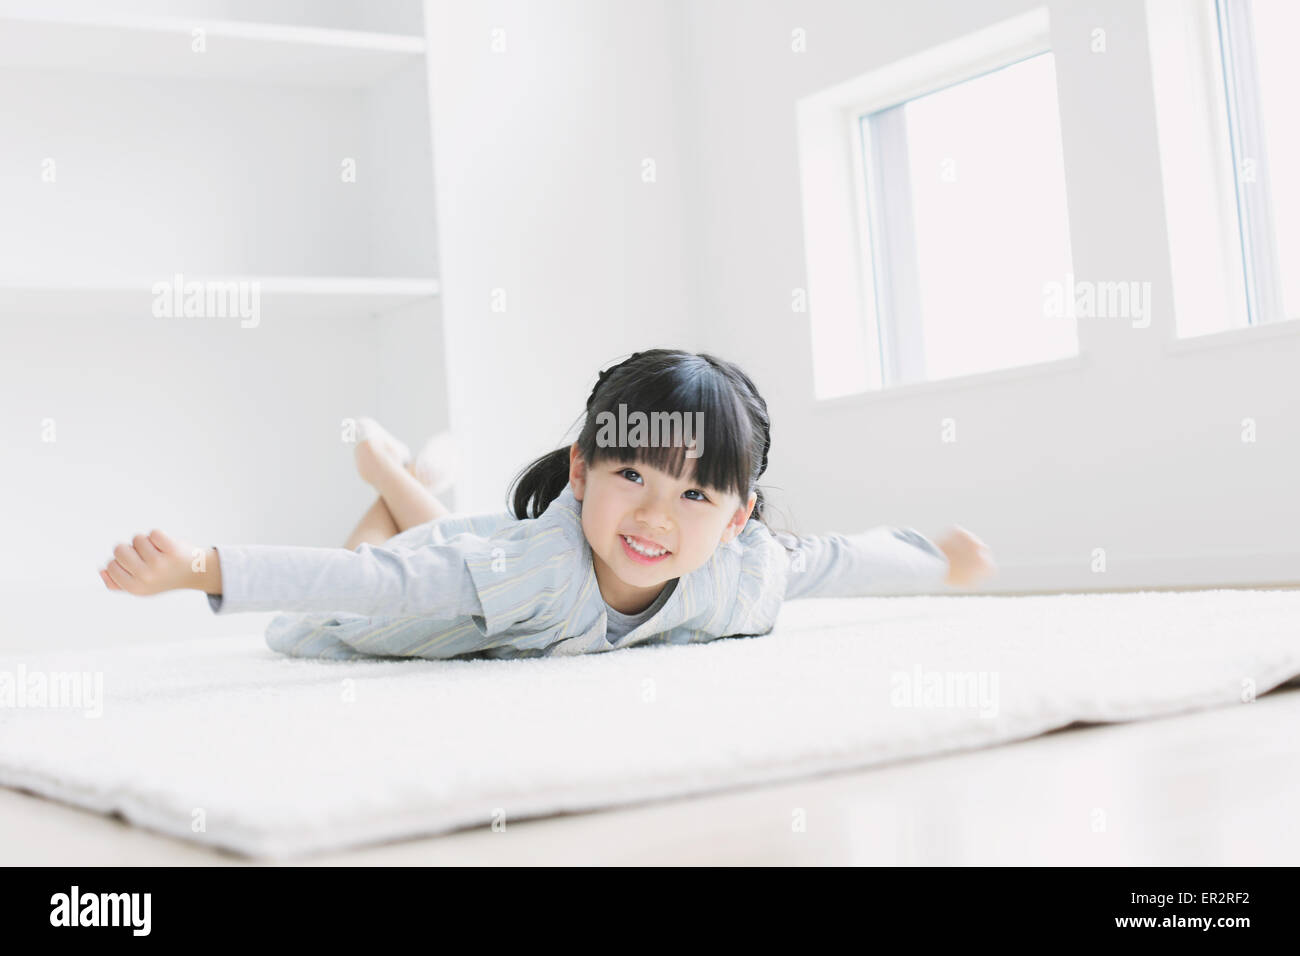 Elementare di età ragazza posa sul pavimento mediante la finestra Foto Stock